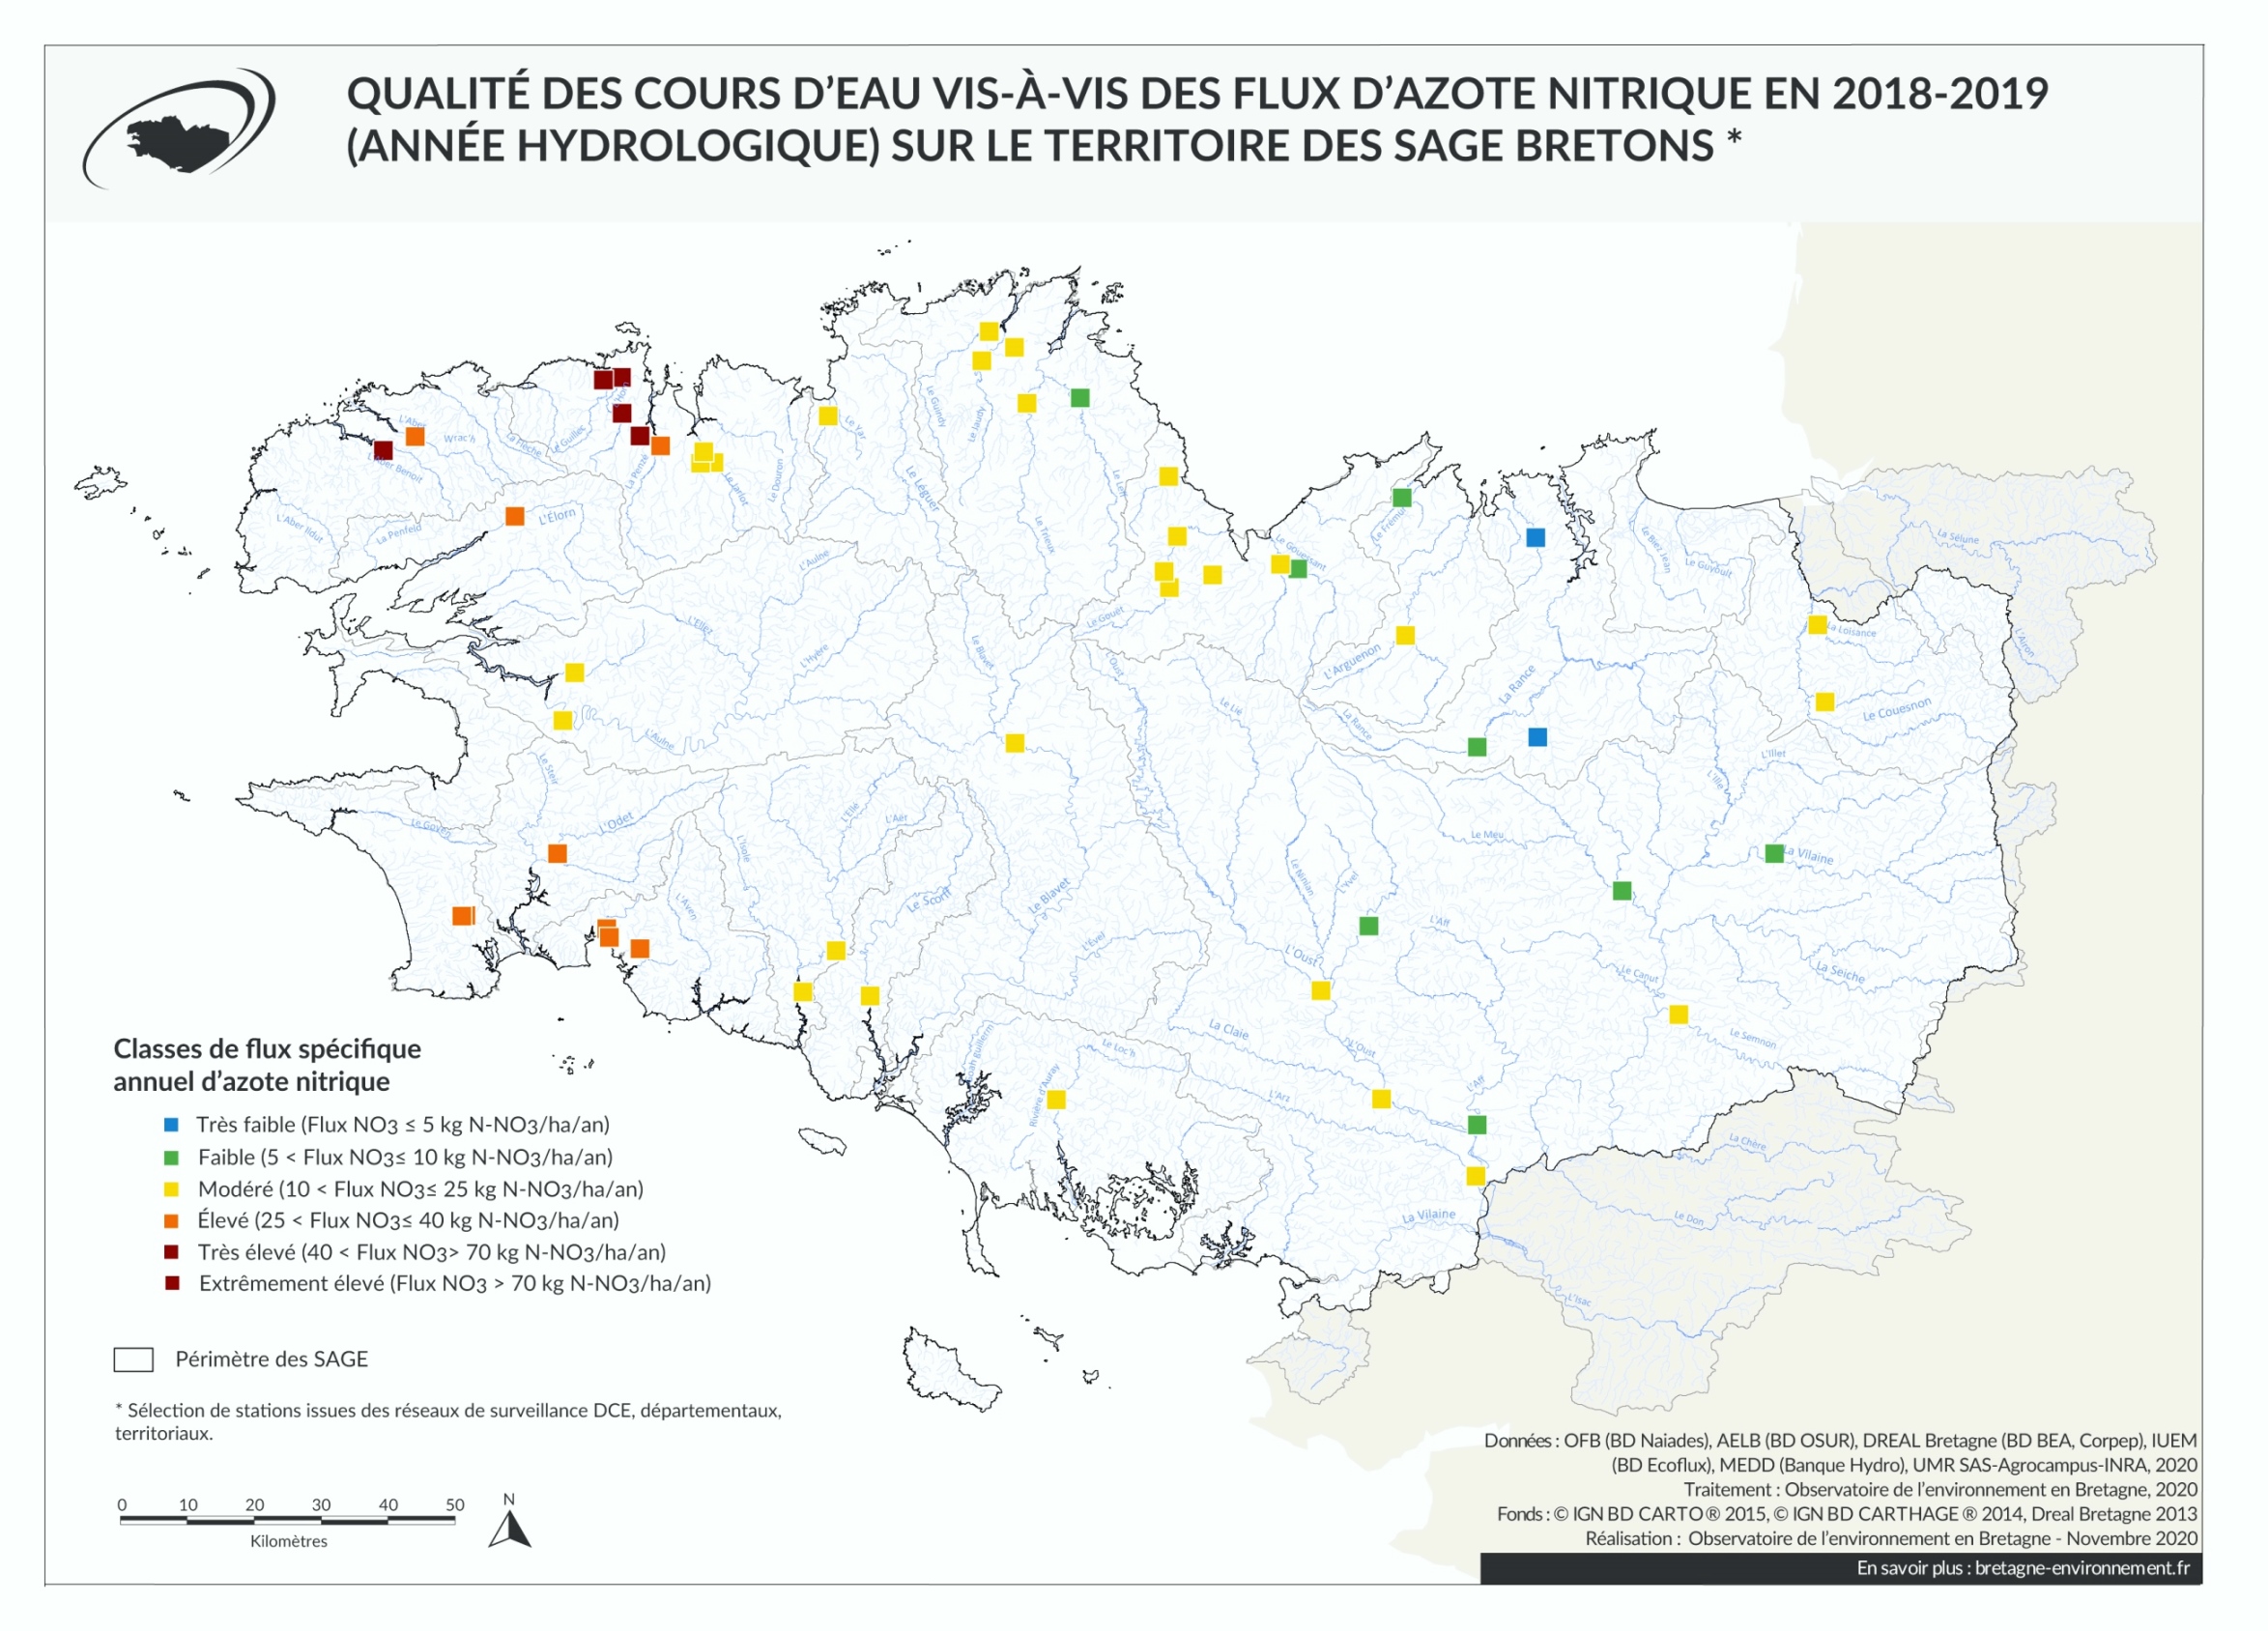 Qualité des cours d'eau bretons vis-à-vis des flux d'azote nitrique en 2018-2019